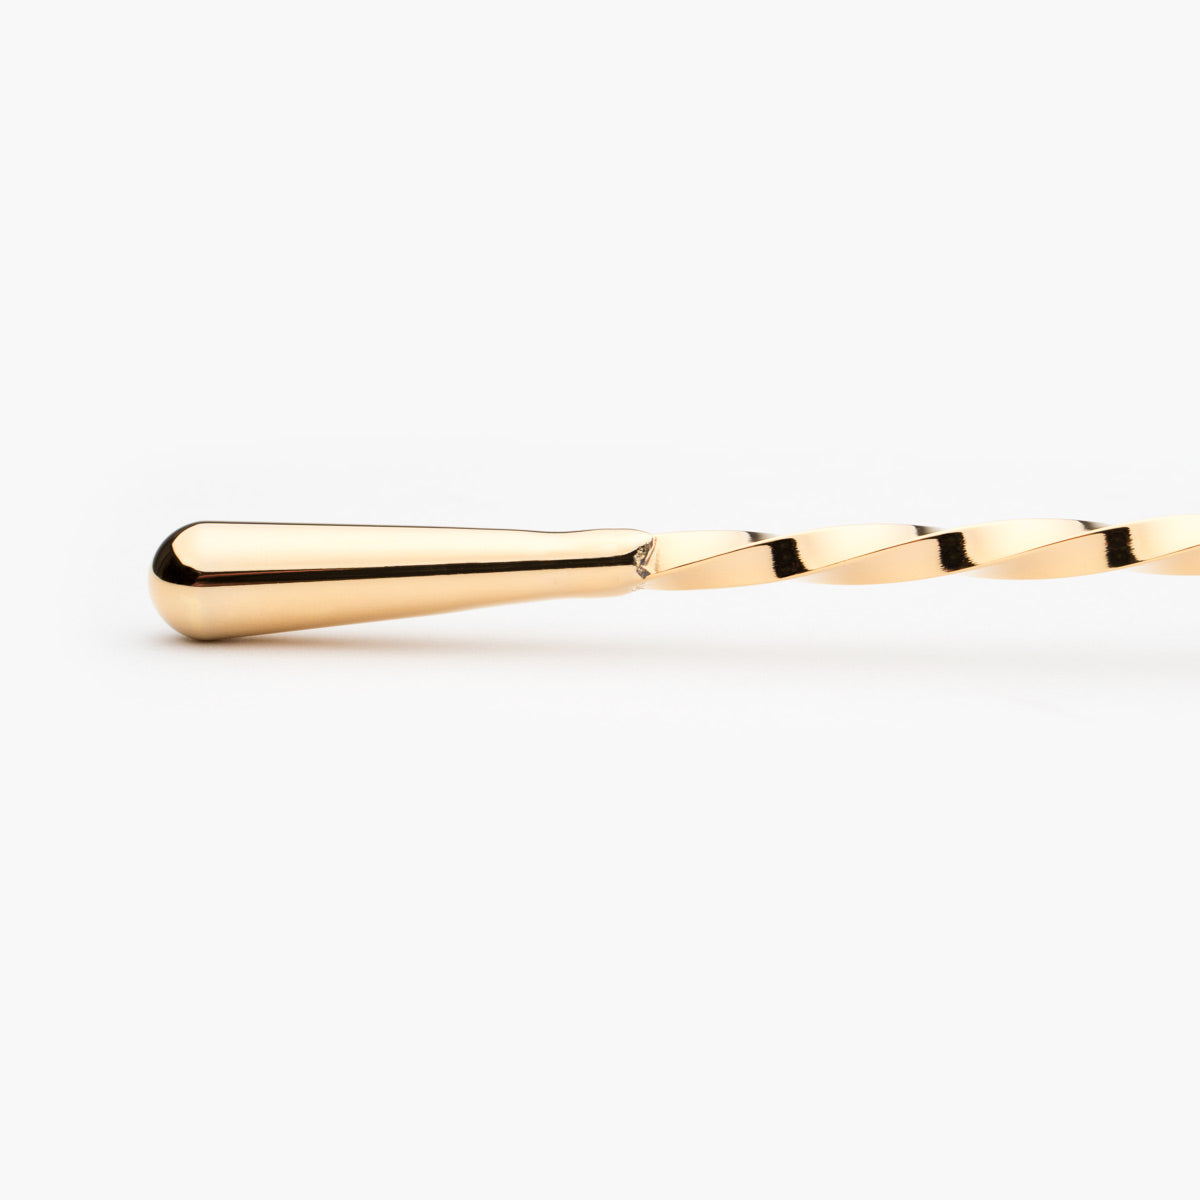 Yukiwa 30cm teardrop barspoon in gold